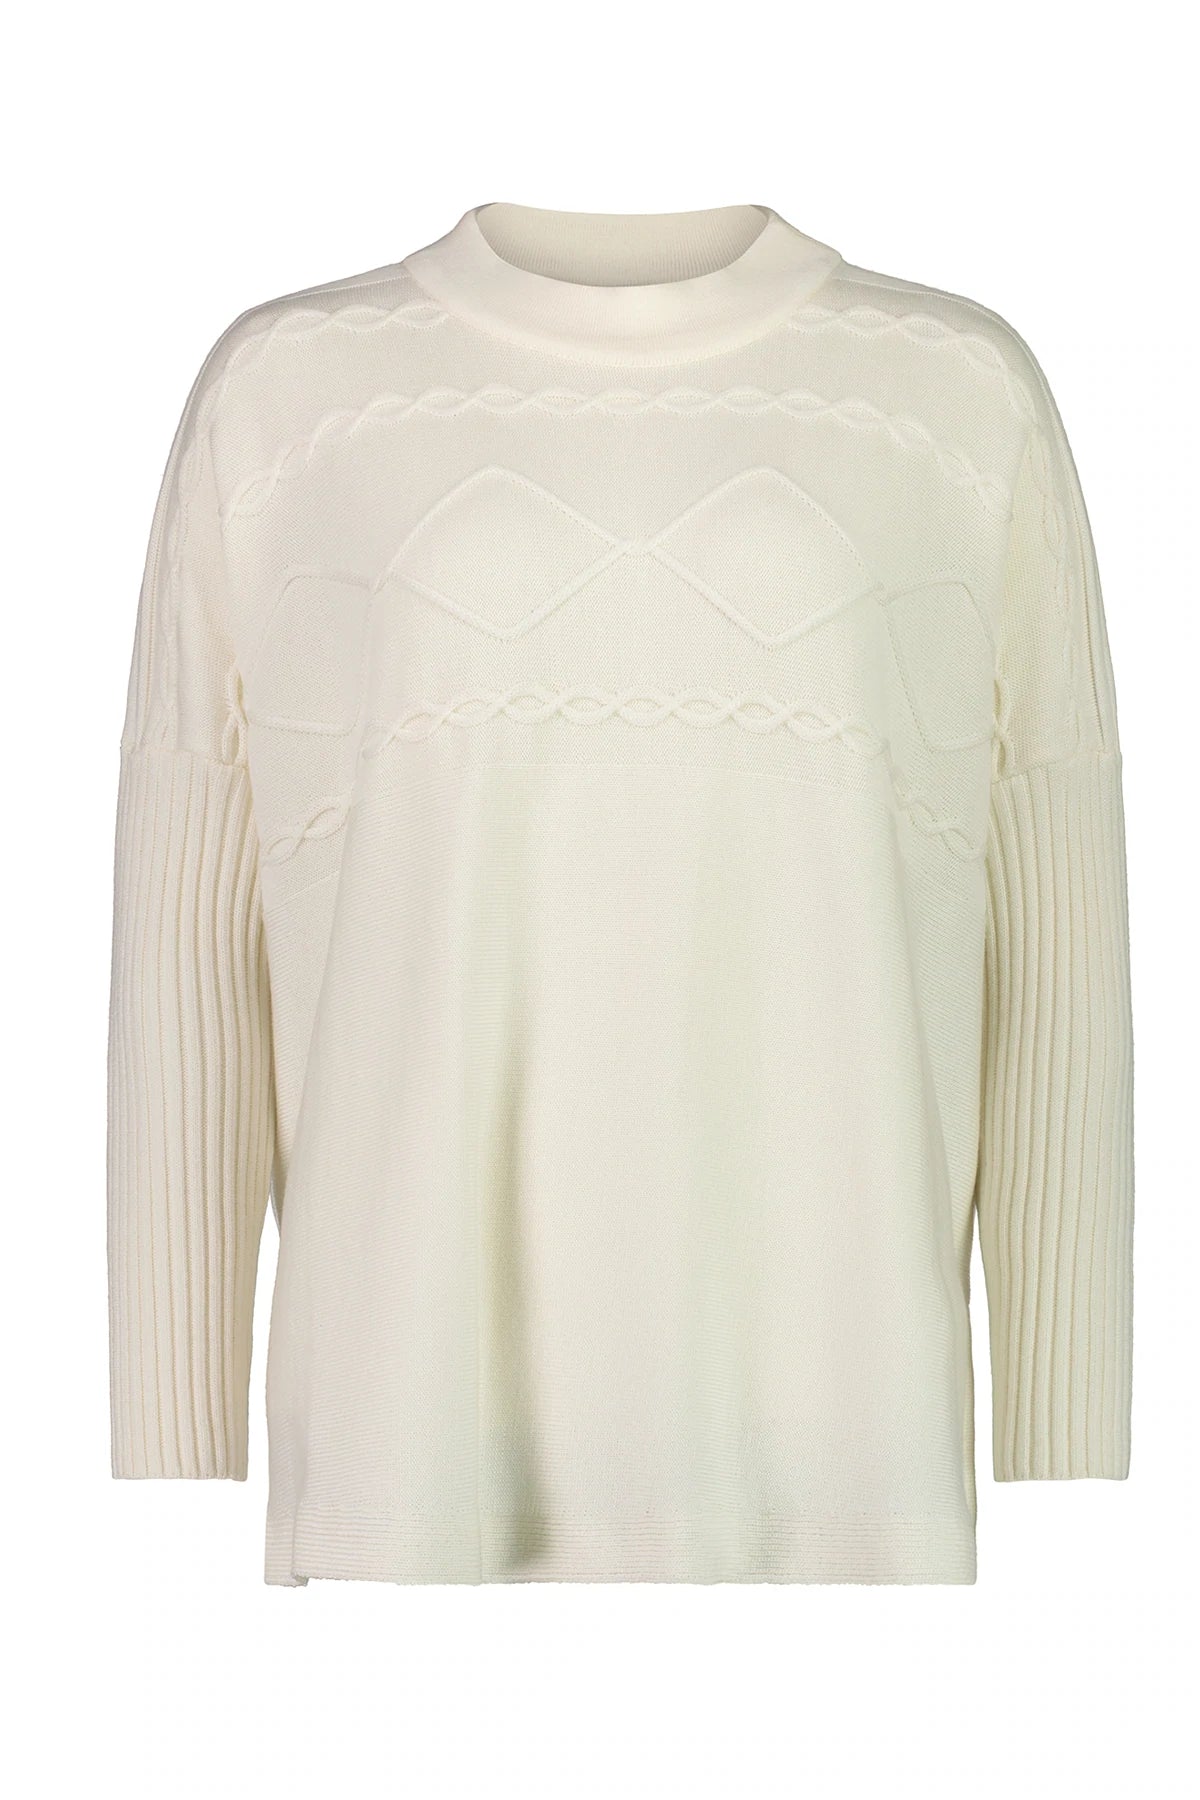 Paula Ryan Boxy Cable Sweater - Winter White